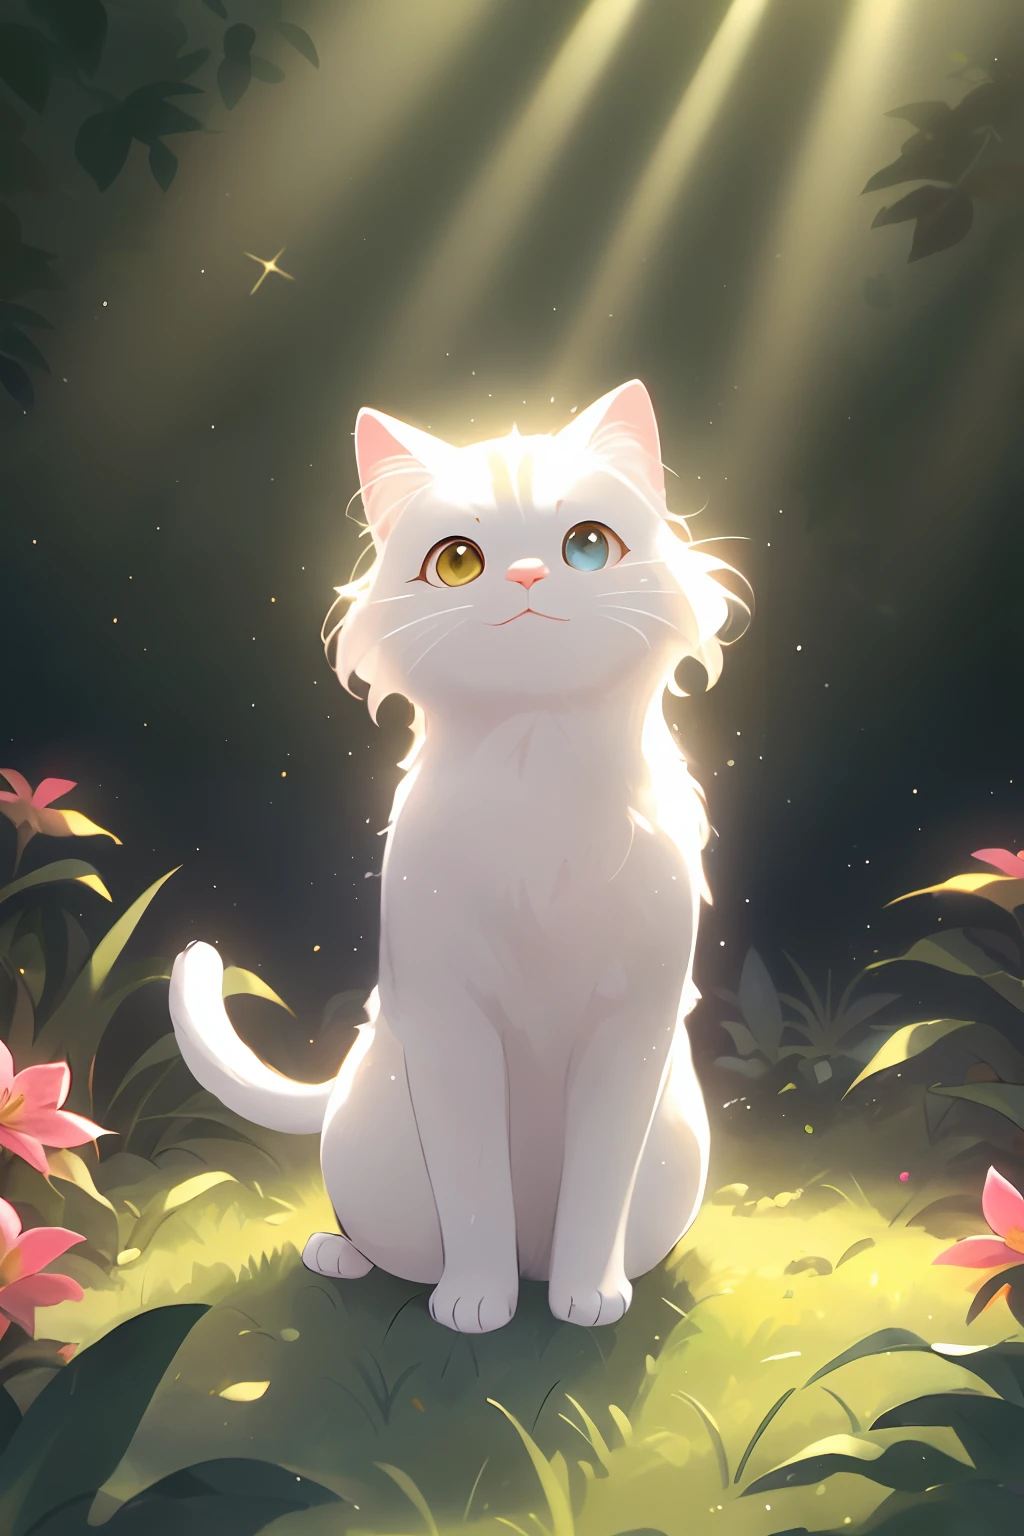 (Um gato branco:1.1 com a star on its head) em um (lindo jardim,jardim tranquilo) filled com (flores coloridas:1.2), (grama verdejante), e (Árvores altas), debaixo de (Céu azul claro). O gato tem (Olhos azuis brilhantes:1.1), a (lindo nariz rosa:1.1), e (Adoráveis orelhas pontudas). Está sentado em um (Almofada macia:1.1) Cercado por (sparkling sunluz) que filtra através das folhas. A pele do gato é (soft e fluffy), com (tons sutis de branco) que lhe dão um (aparência brilhante). The star on its head shines com a (mágico,Brilhante:1.1) luz, fundindo minúsculas manchas de (ouro) Aquela dança no ar. O gato olha (curious e playful), como se estivesse prestes a (Bater em uma borboleta) esvoaçando nas proximidades. The scene is bathed em um (warm e dreamy) Paleta de cores, com (tons pastéis suaves) que criam uma sensação de (calm e tranquility). The overall luzing is (gentle e enchanting), com (ouroen rays of sunluz) filtering through the trees e casting beautiful (sombras) no chão. A qualidade da imagem é do (melhor qualidade,alta resolução:1.1), capturando (cada detalhe intricado) of the cat's fur e the surrounding garden.